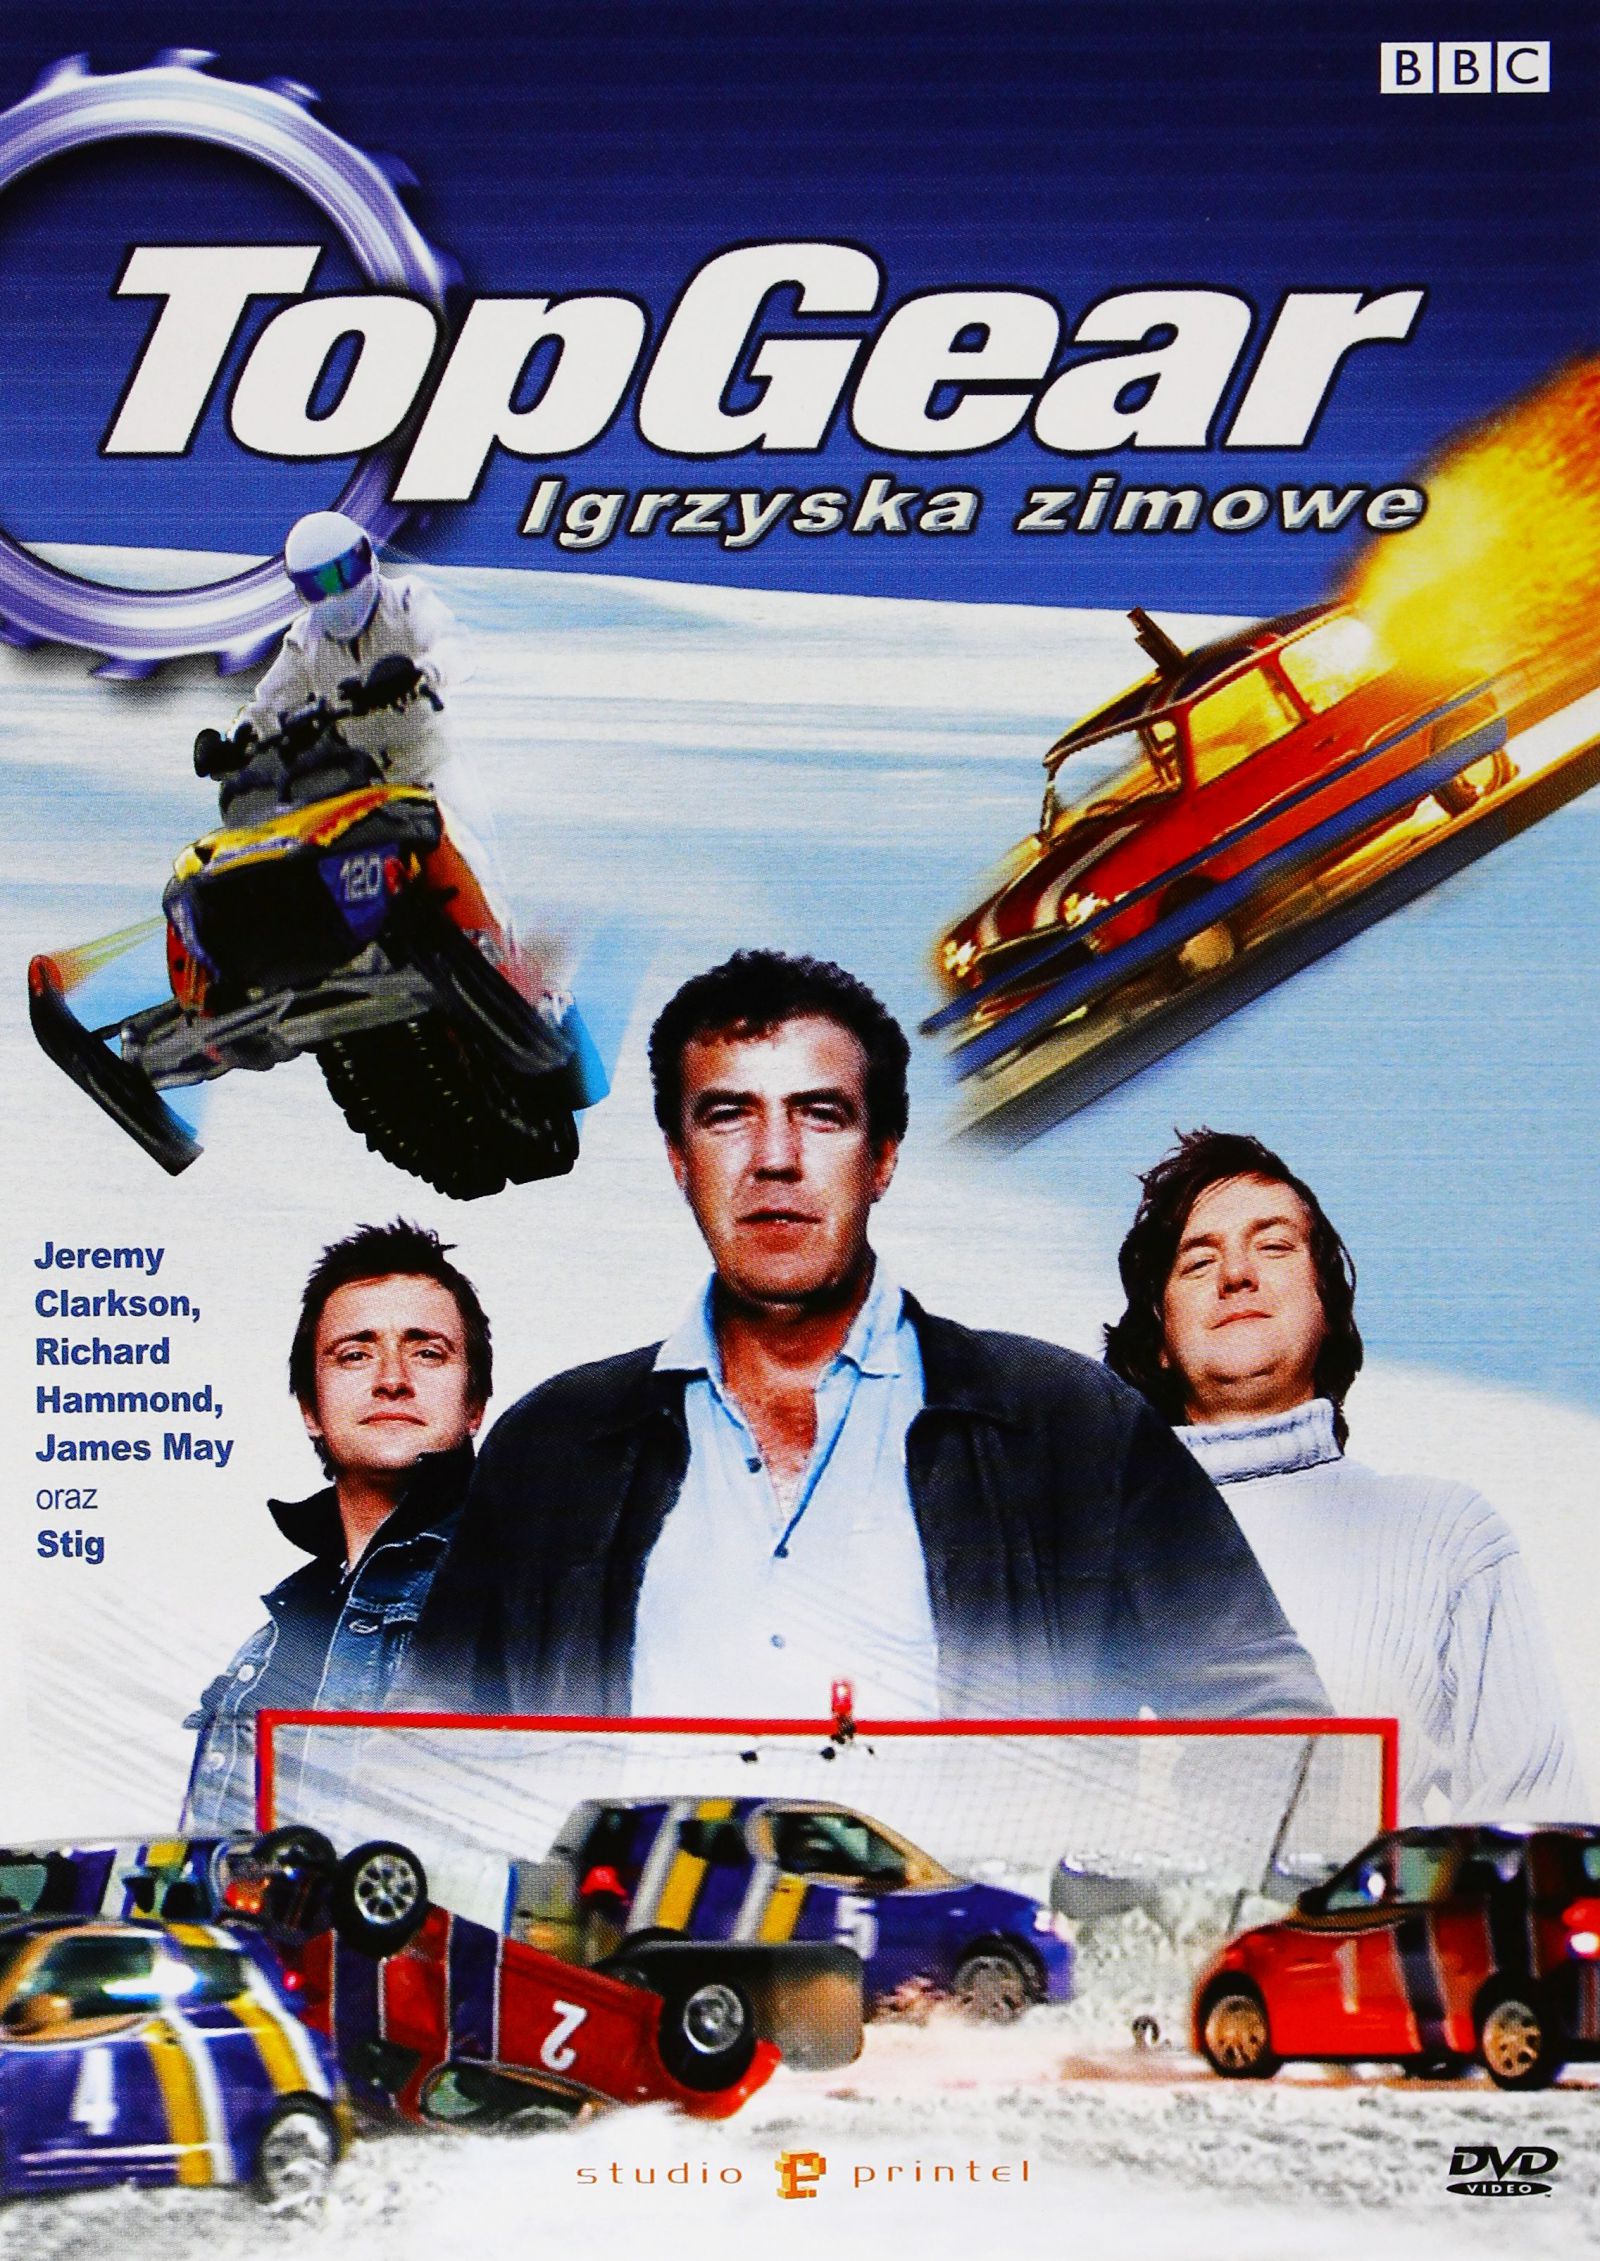 TOP GEAR - IGRZYSKA ZIMOWE (BBC) [DVD]